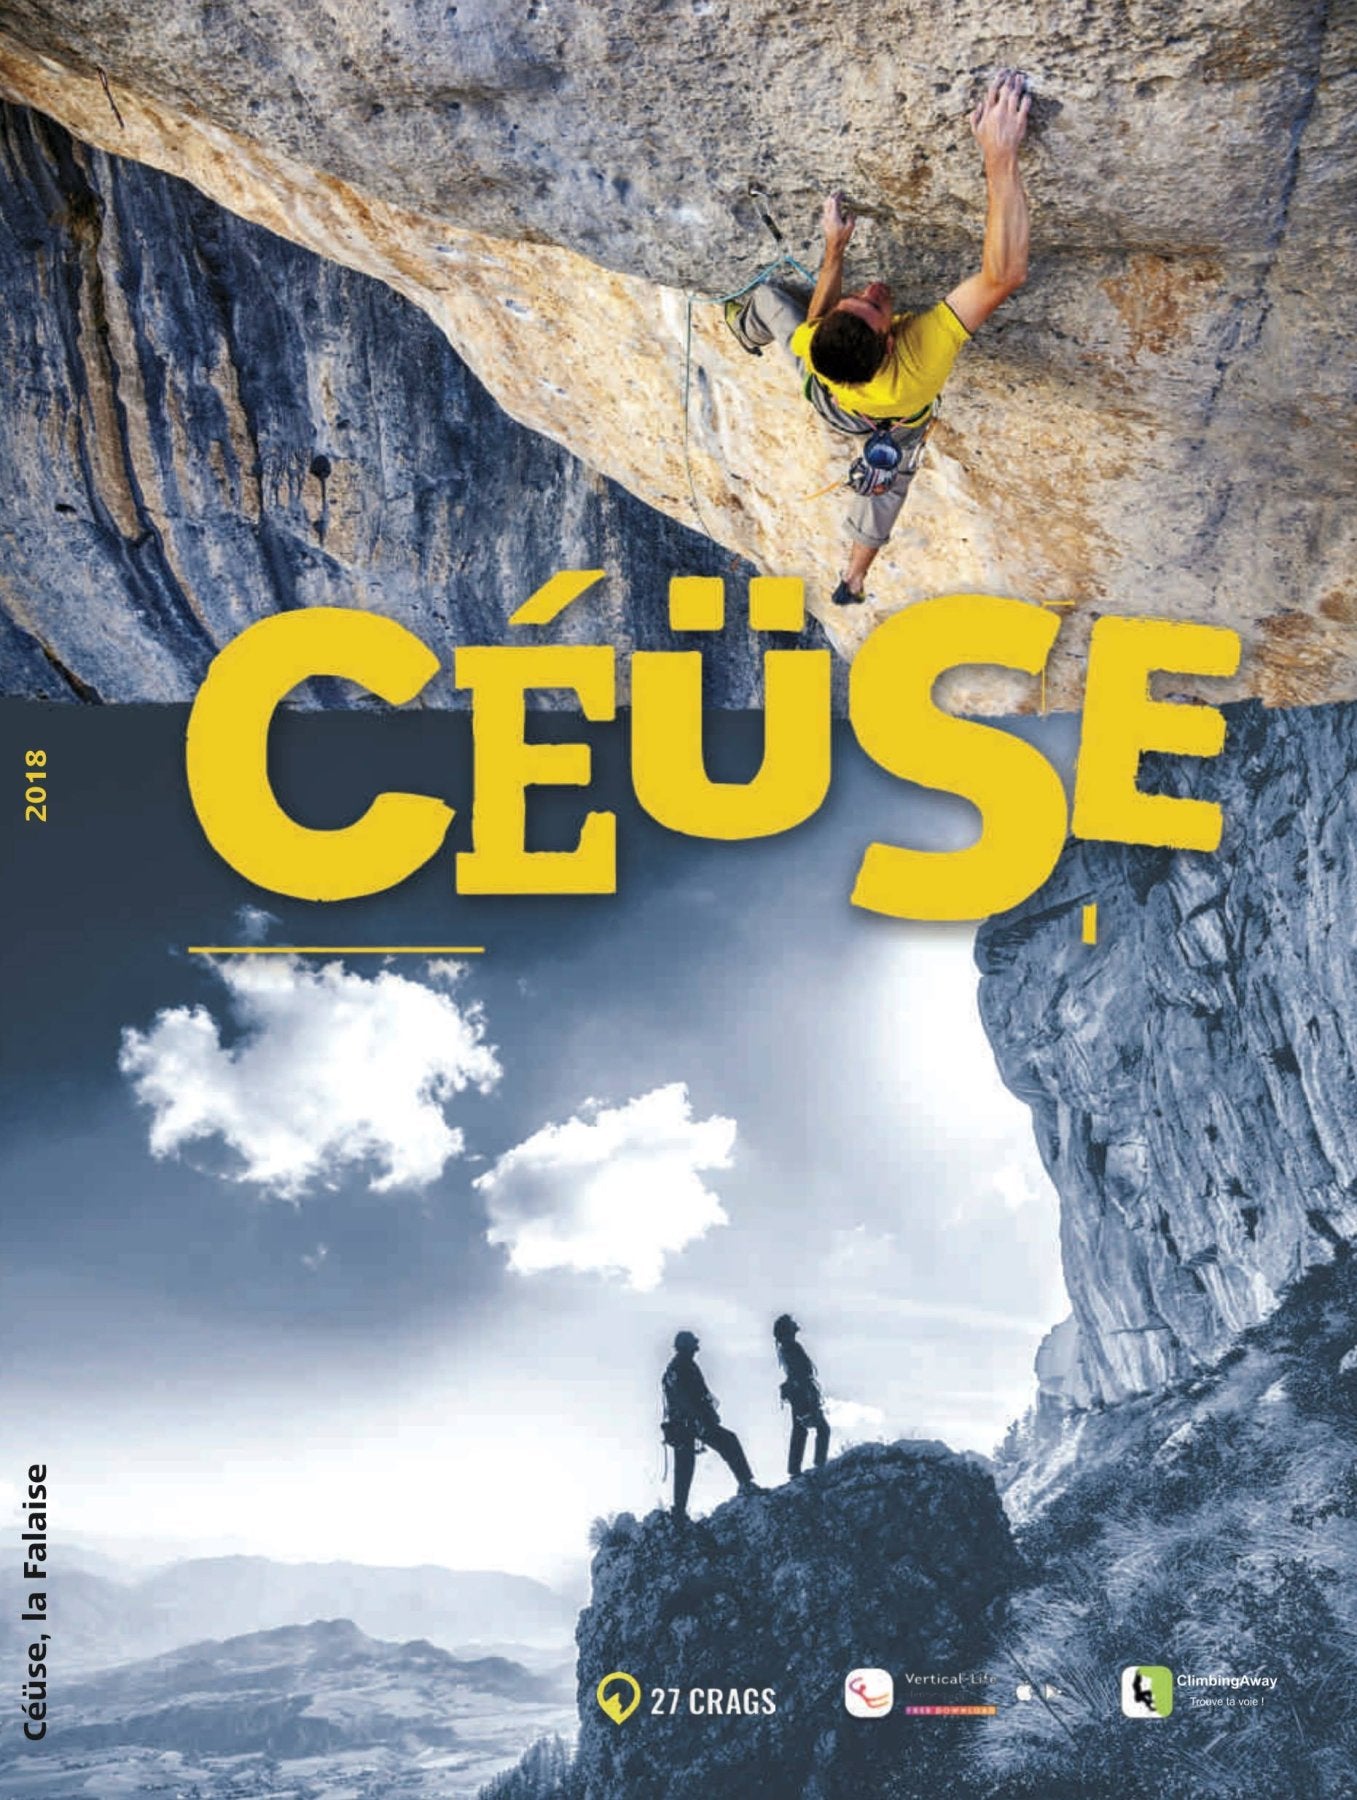 Céüse (2018), guidebook